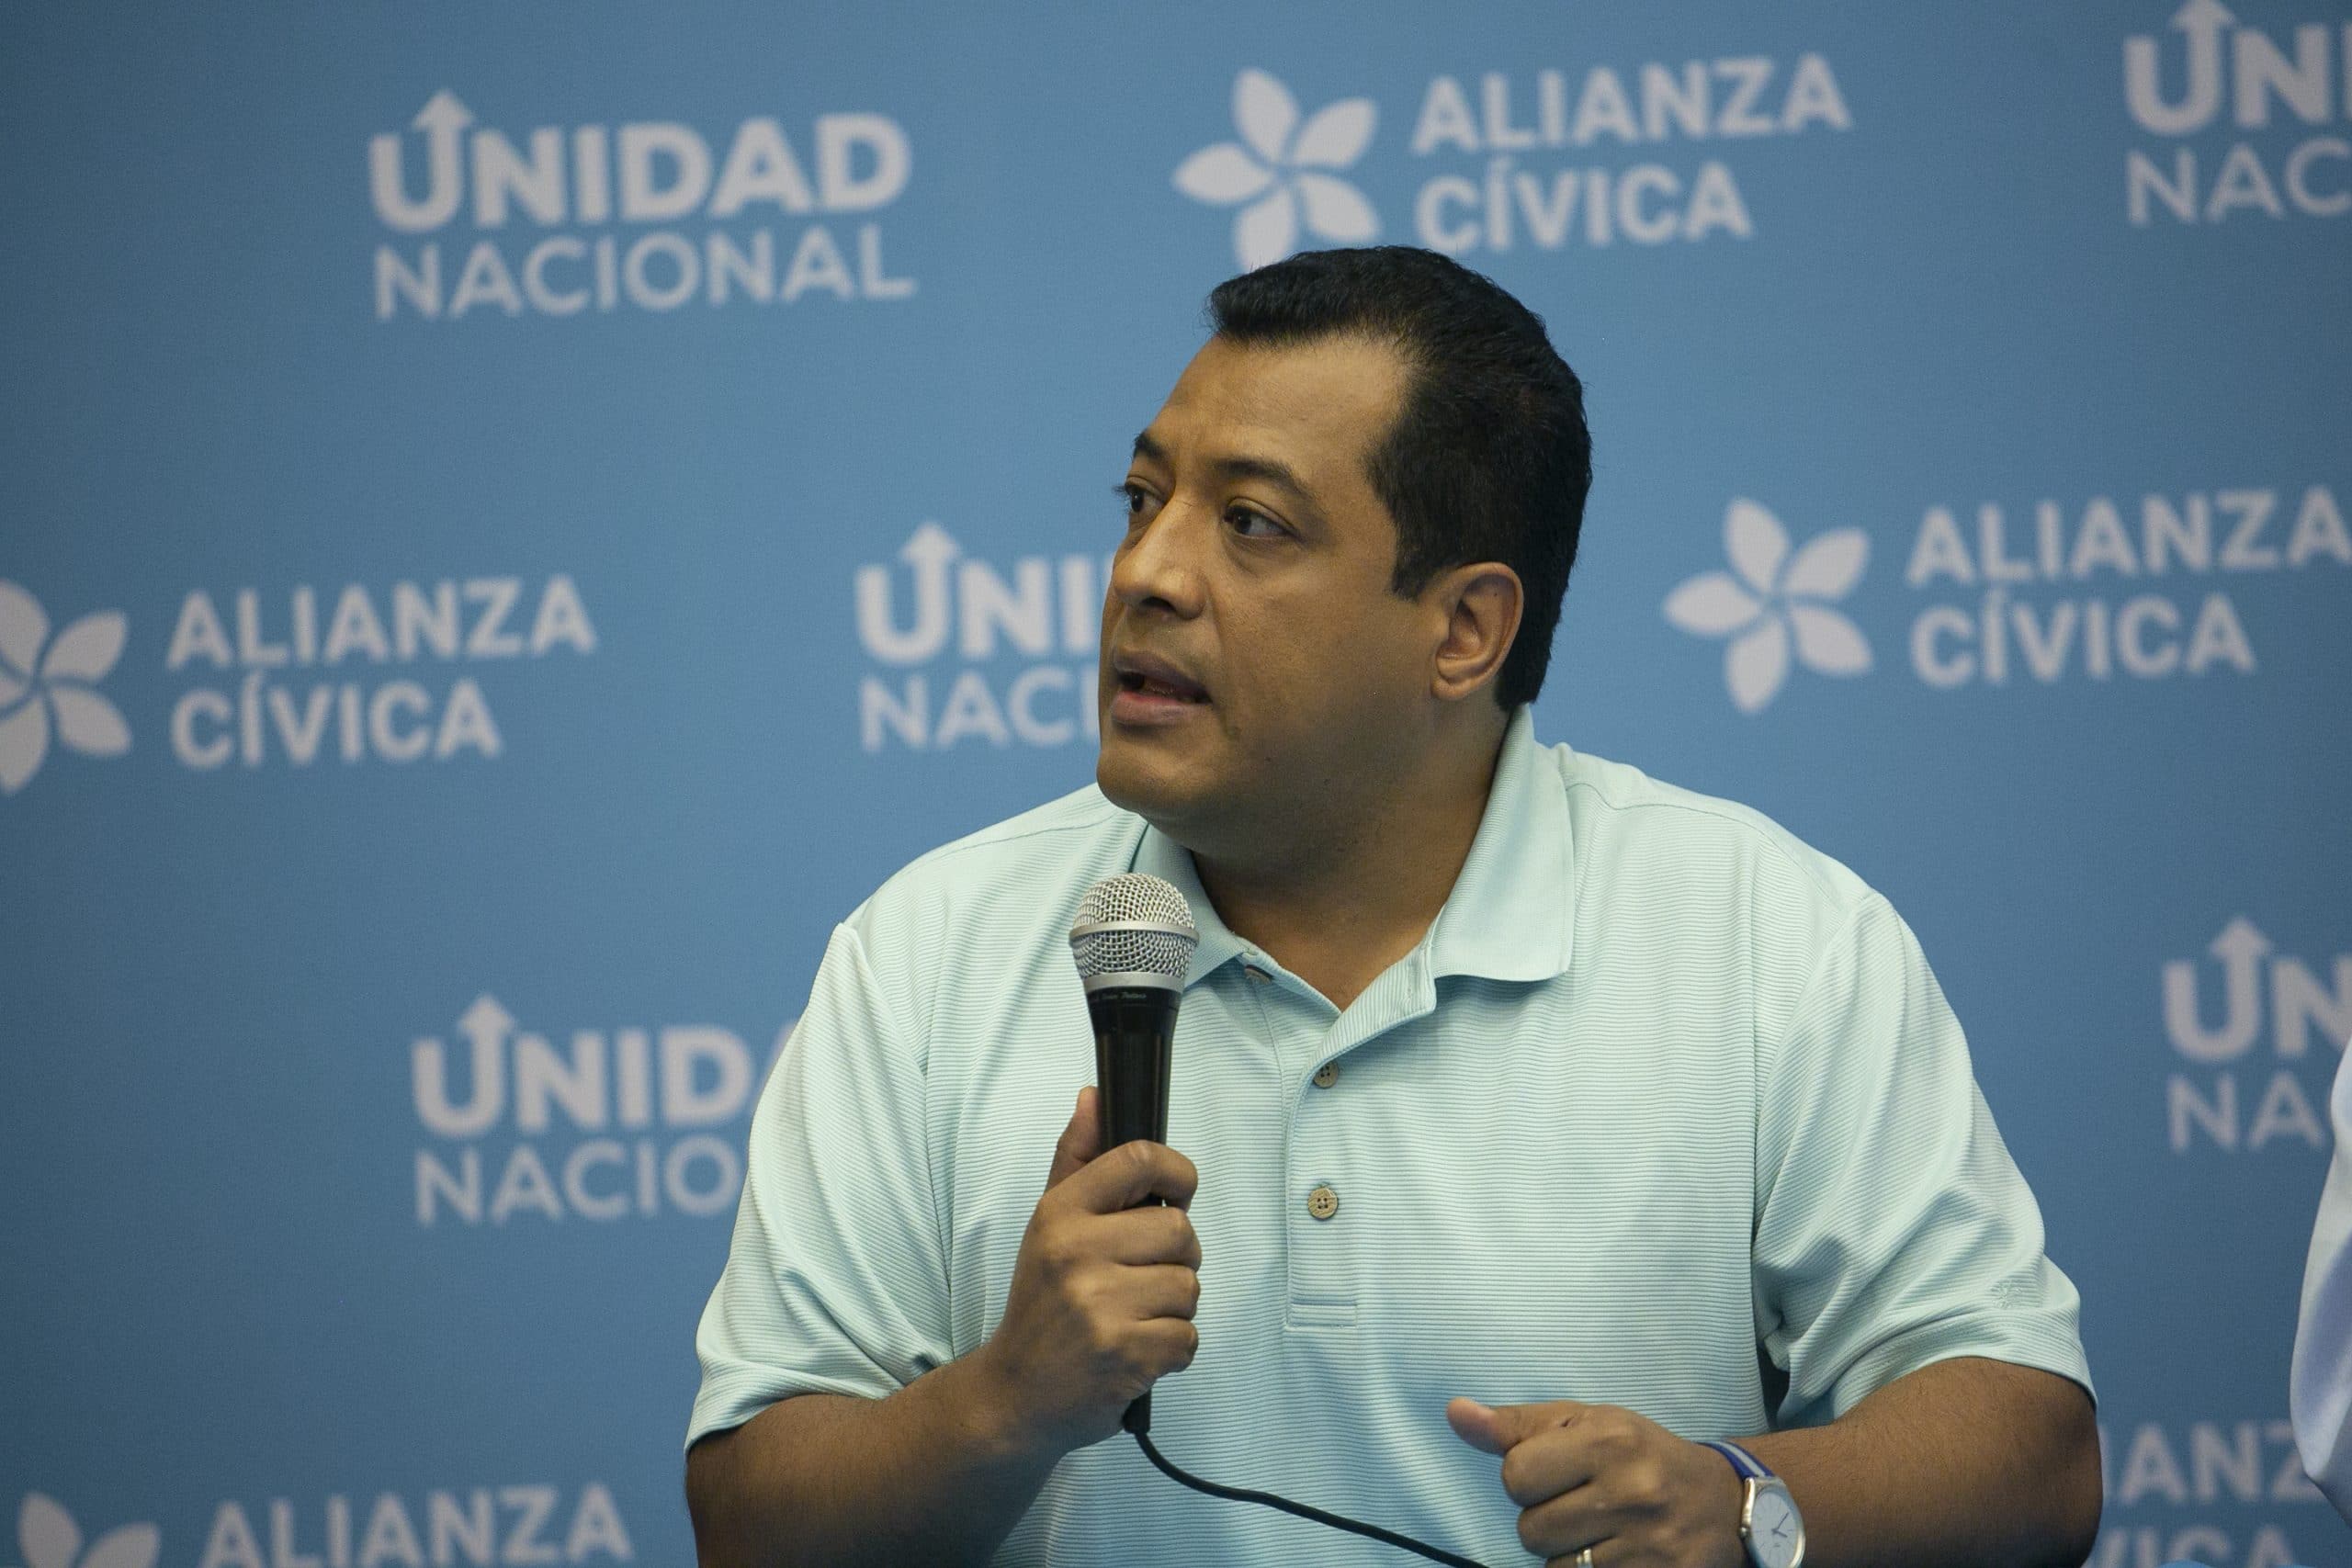 Félix Maradiaga, candidates who defeated Daniel Ortega